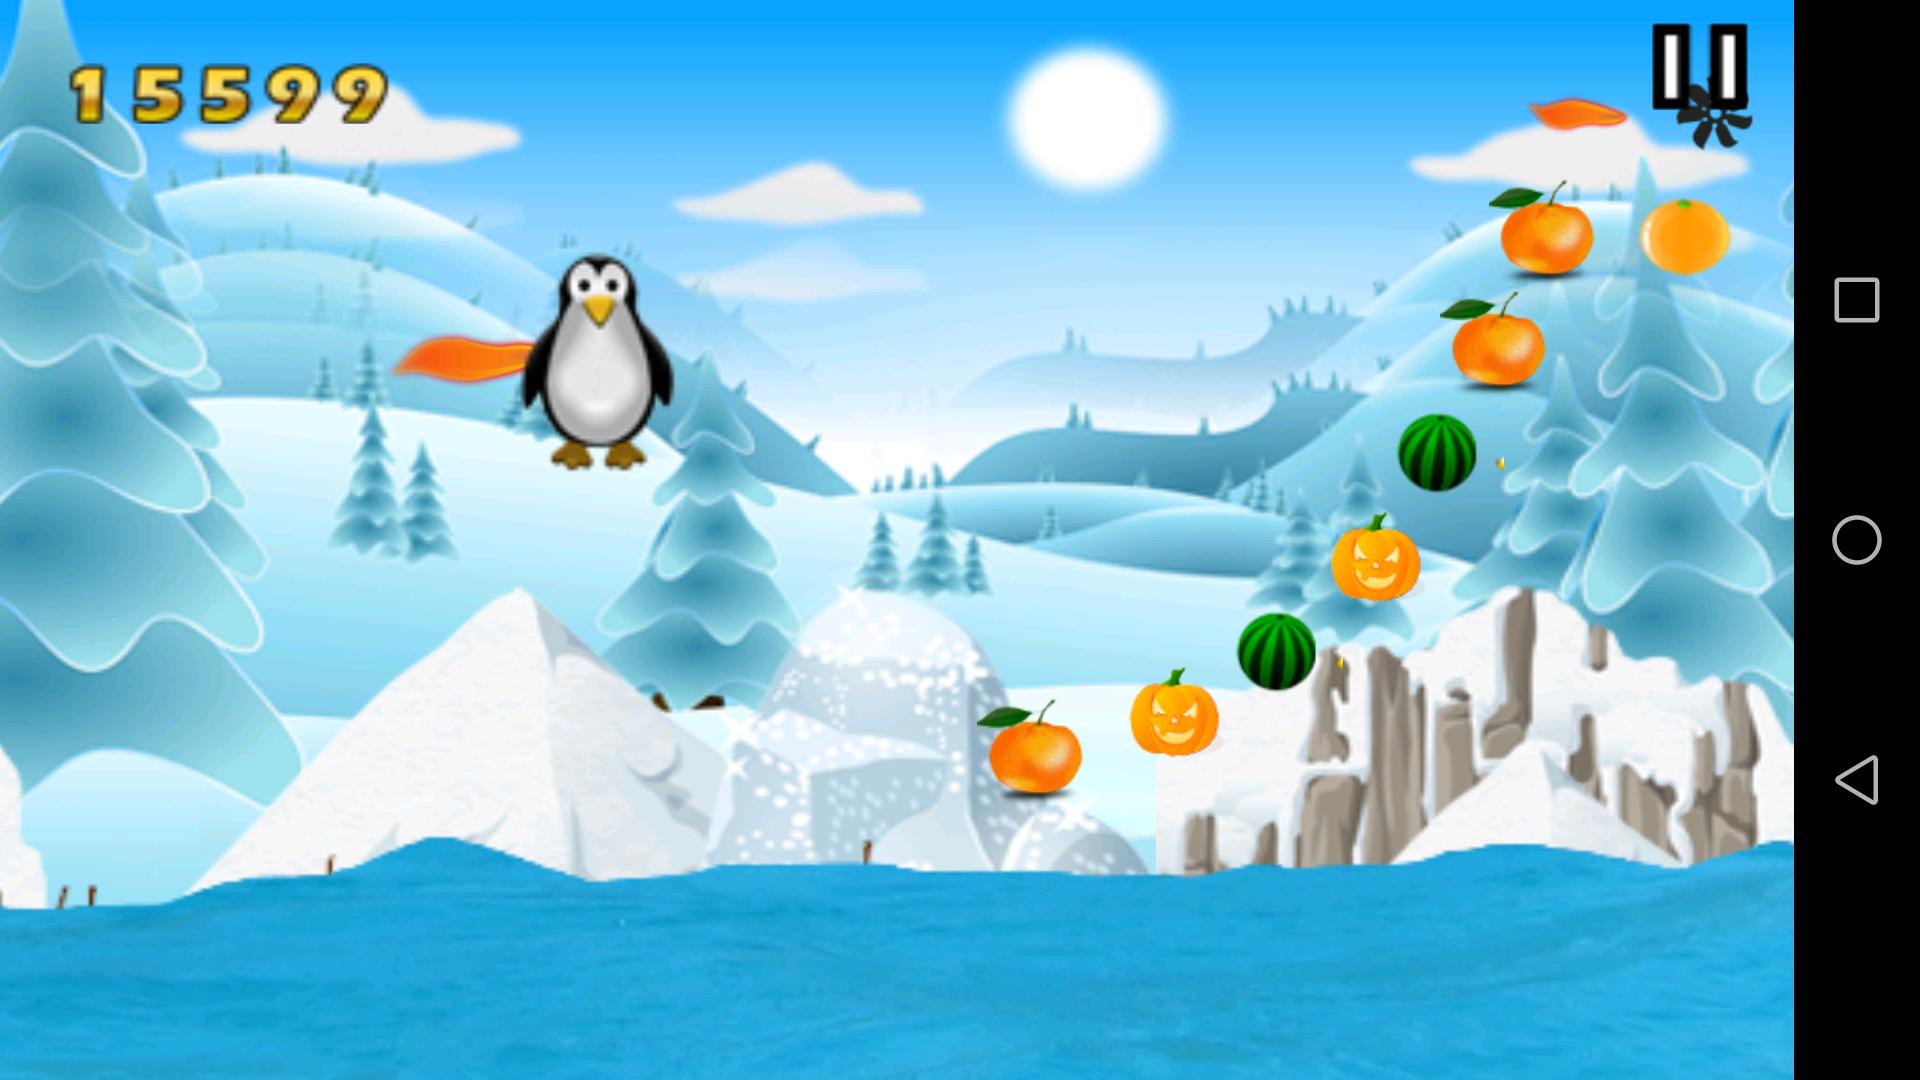 Игра пингвина битой. Пингвин игра виндовс 10. Зимний фон игры Пингвин. Программа для игры Пингвин. Игра Пингвин по льду прыгает и собирает монетки.